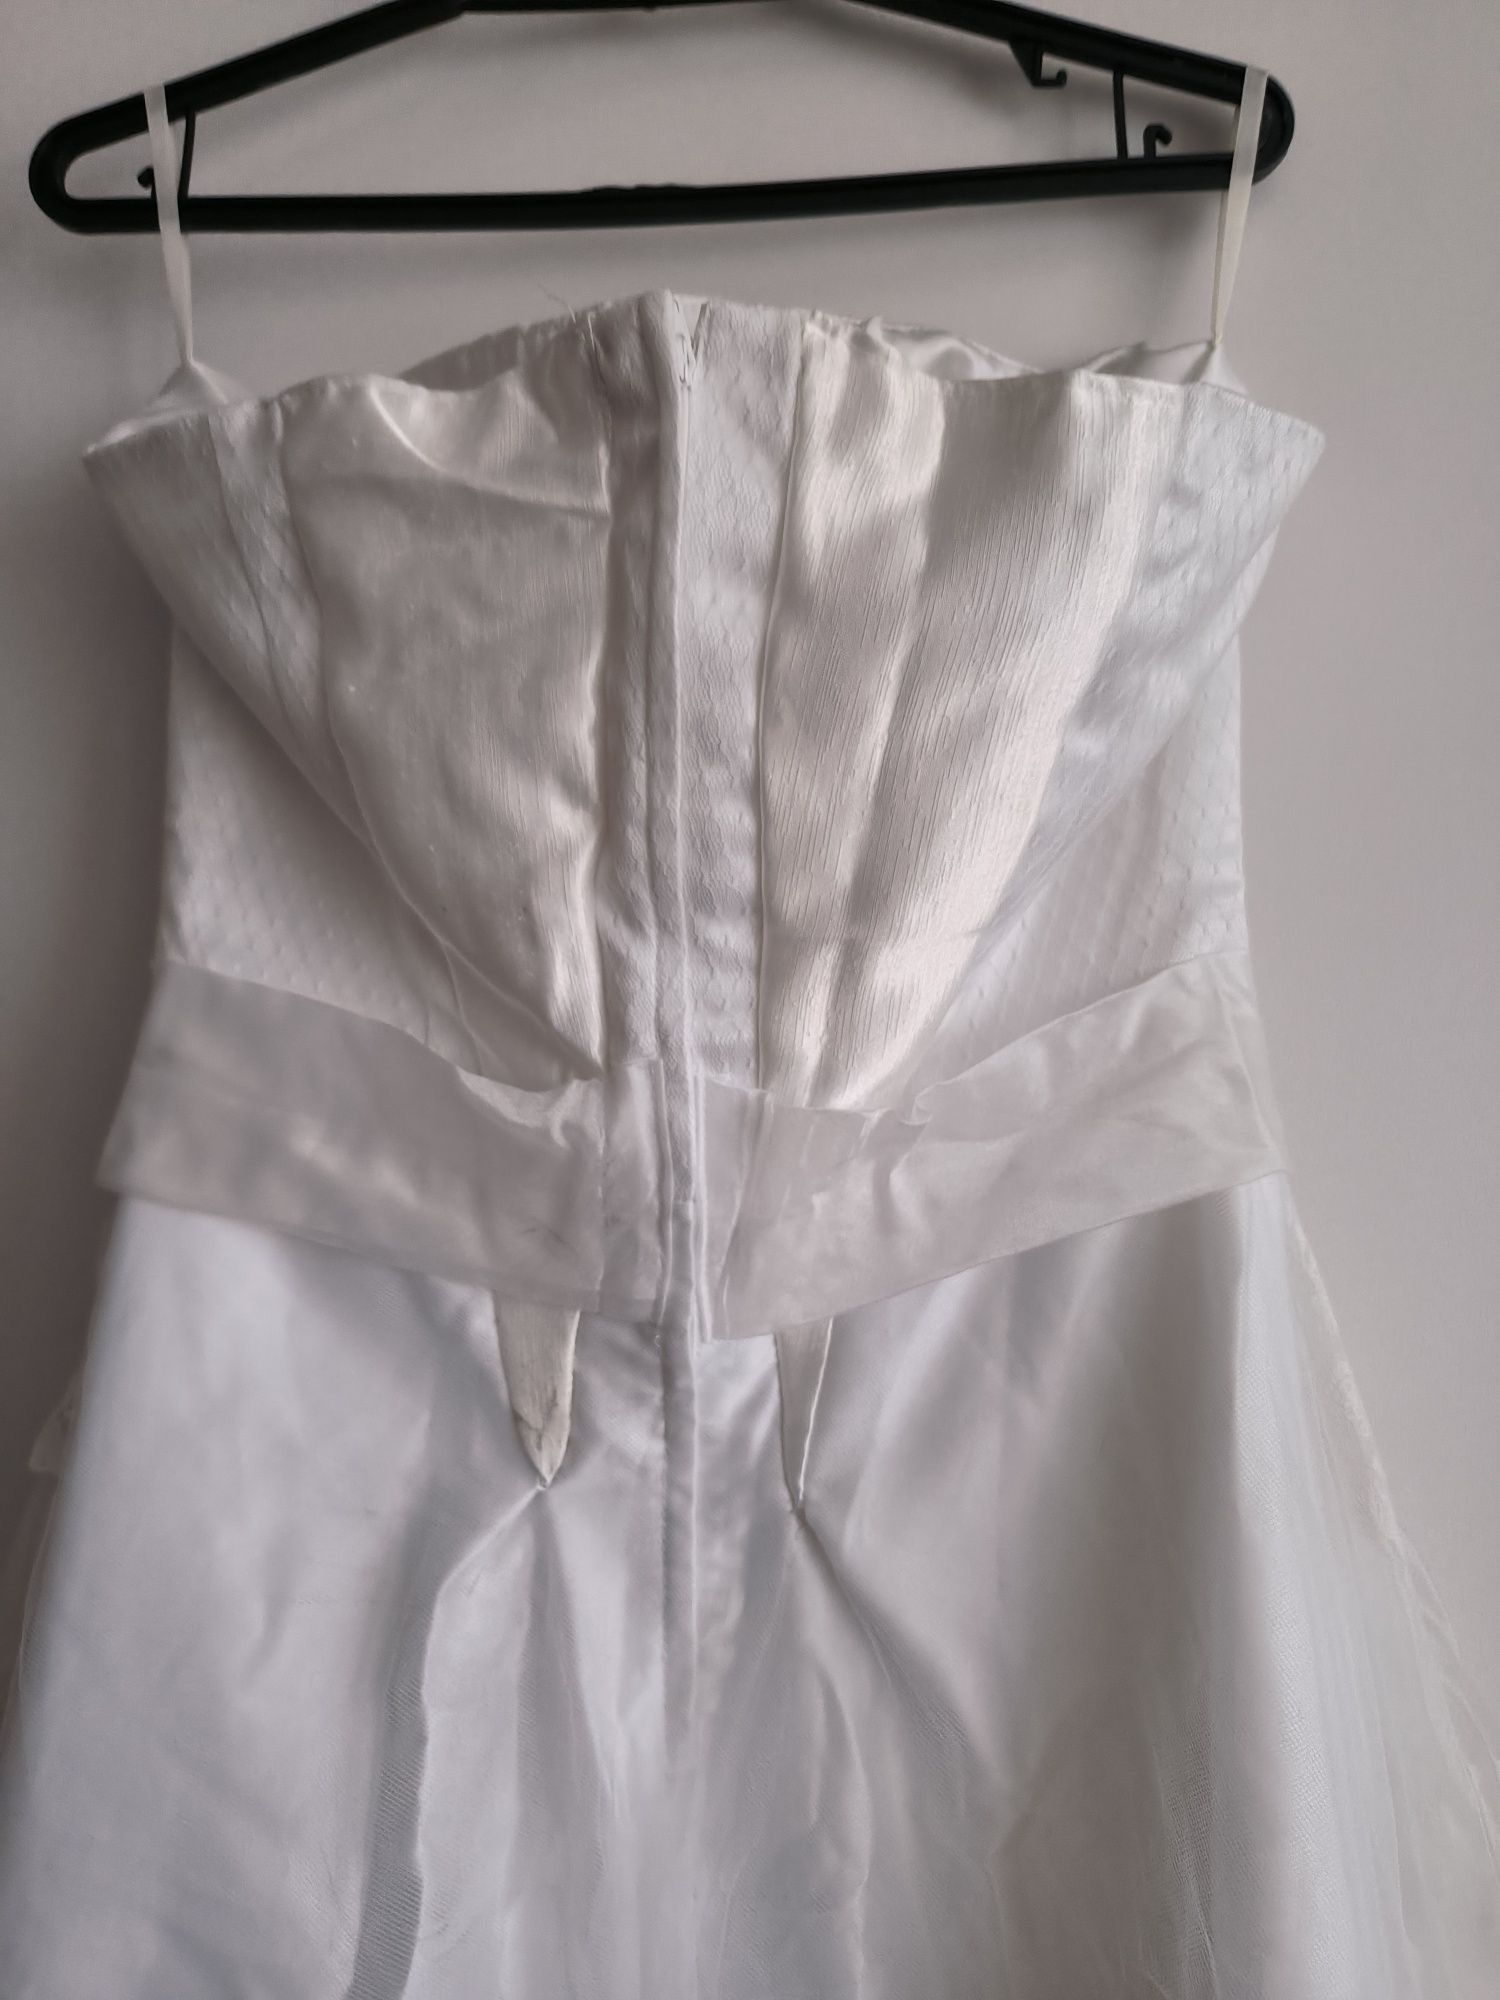 Biała koronkowa suknia ślubna z gorsetem tiul 36 38 S M